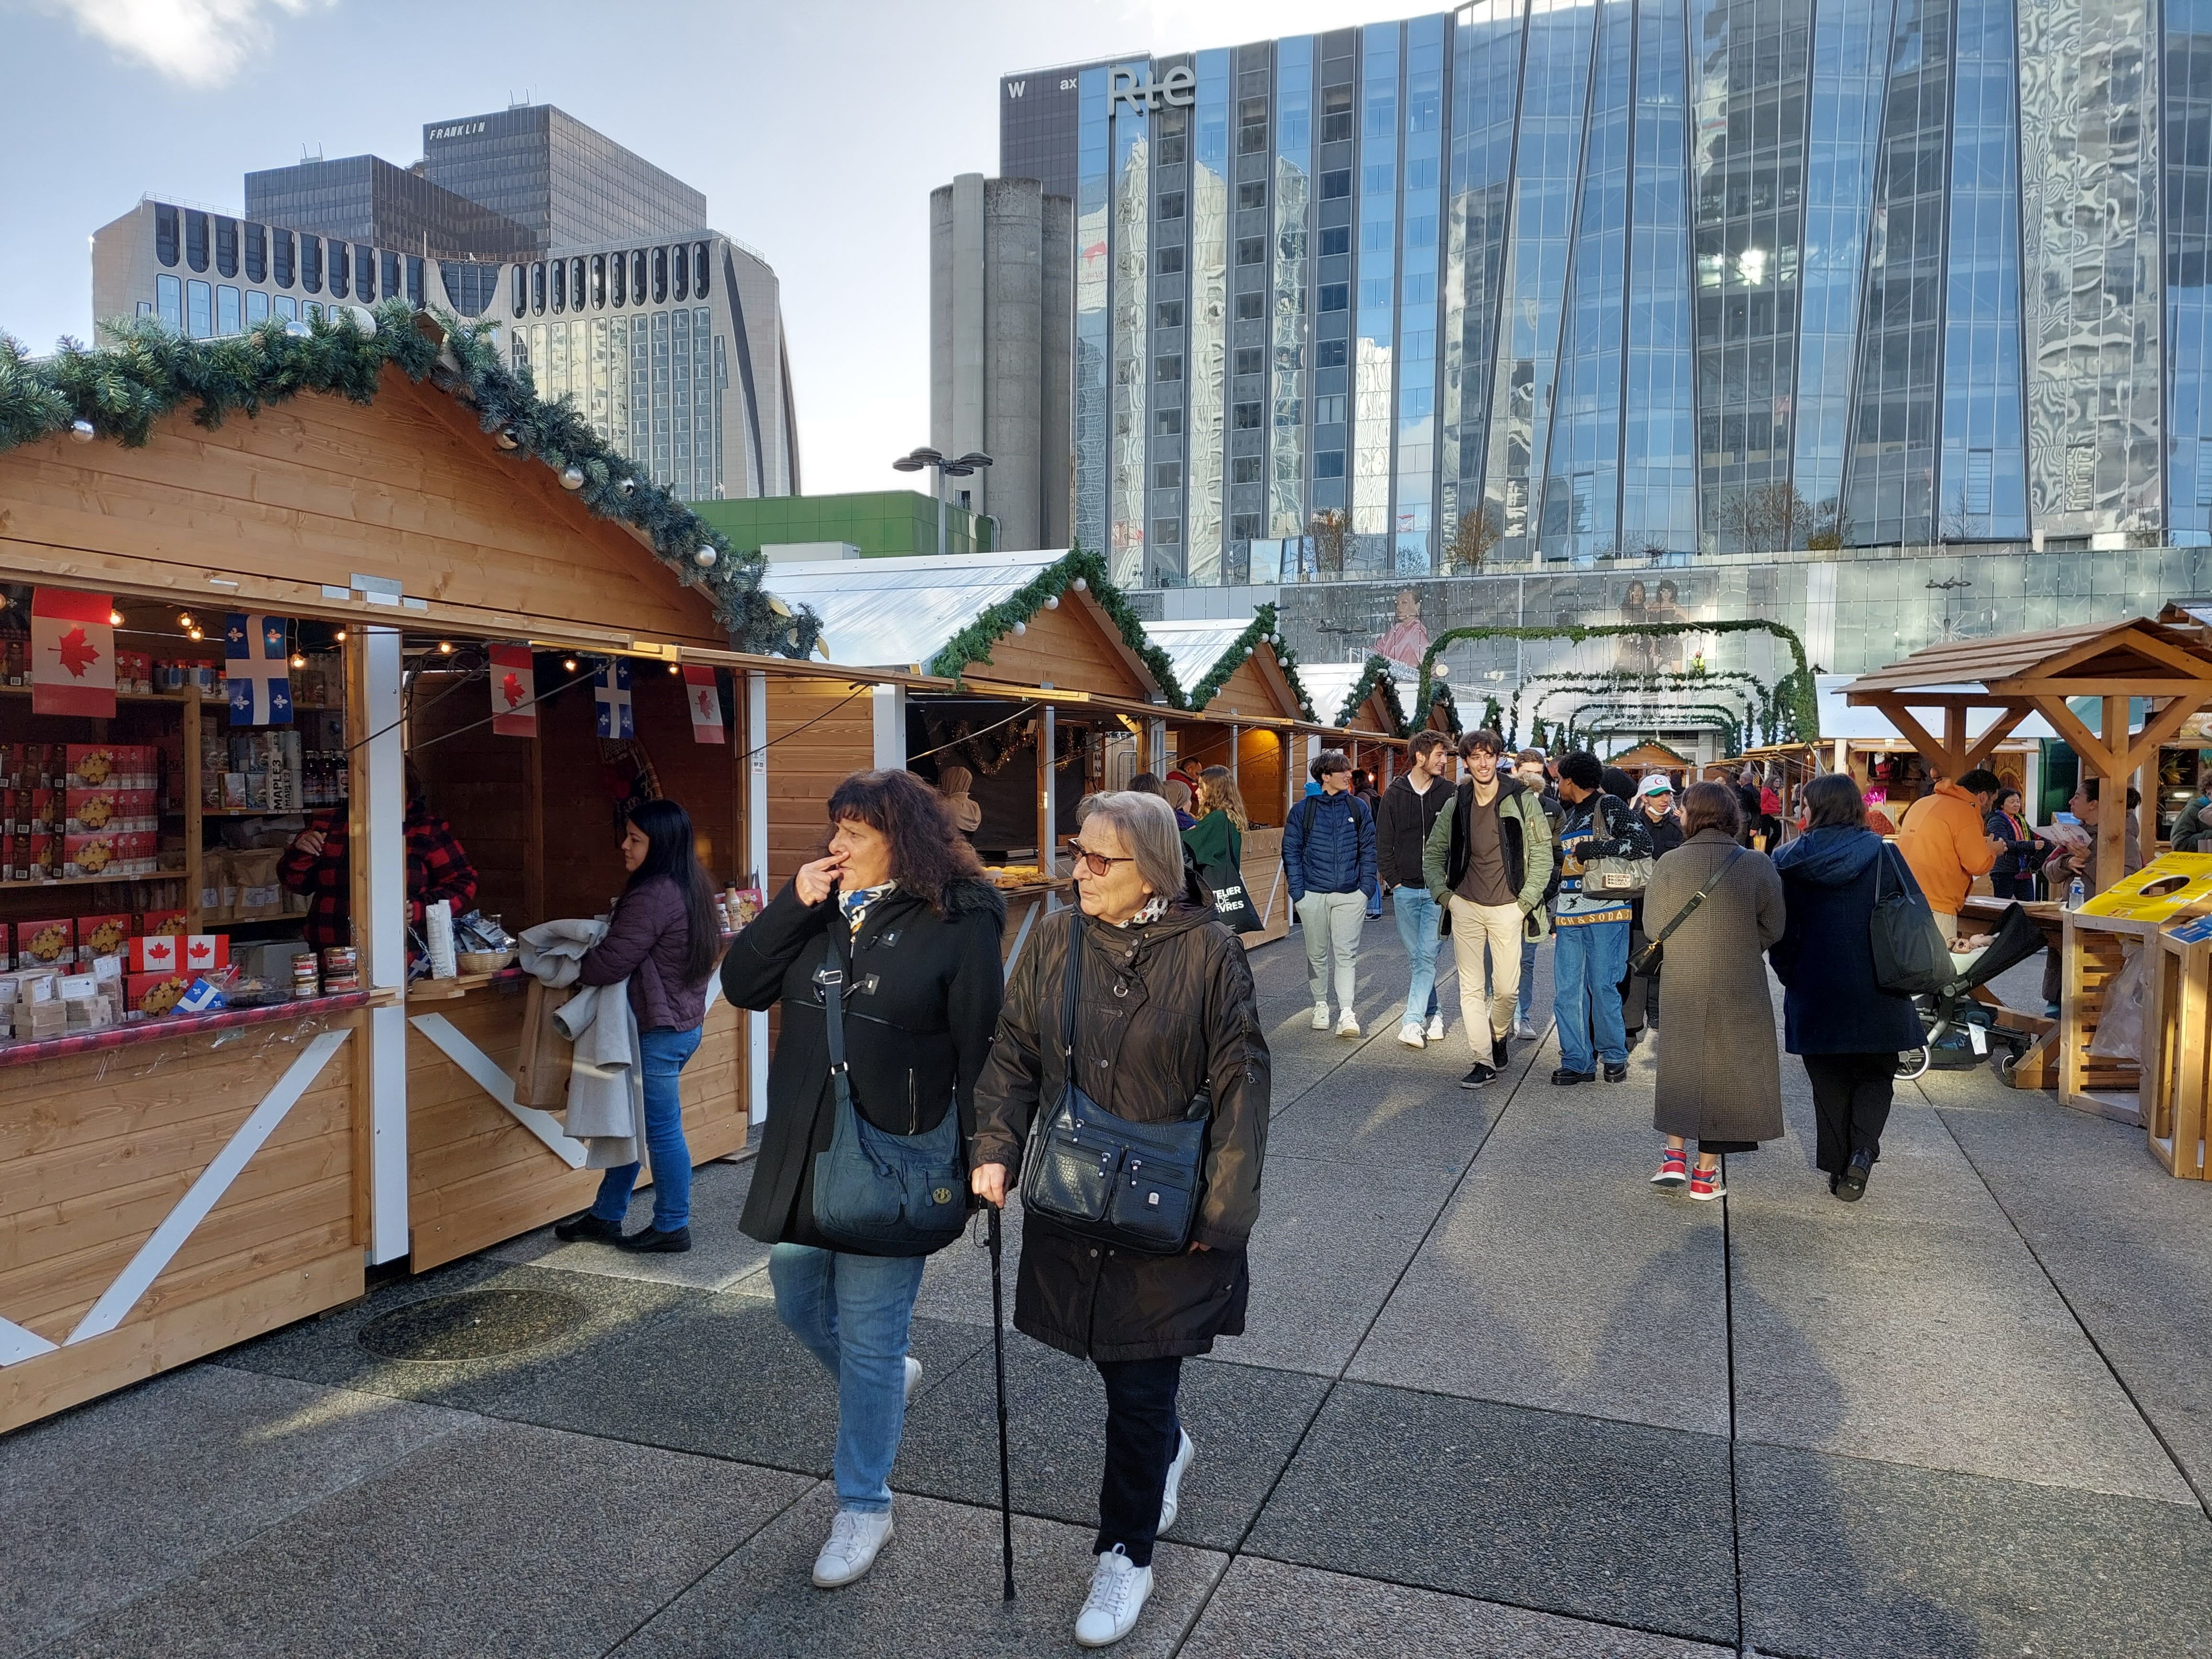 La Défense, le 25 novembre. Le marché d Noël a finalement ouvert avec deux jours de retard. Un moindre mal puisqu'après un avis négatif de la commission de sécurité, l'ouverture avait dans un premier temps été reportée au lundi 28 novembre.